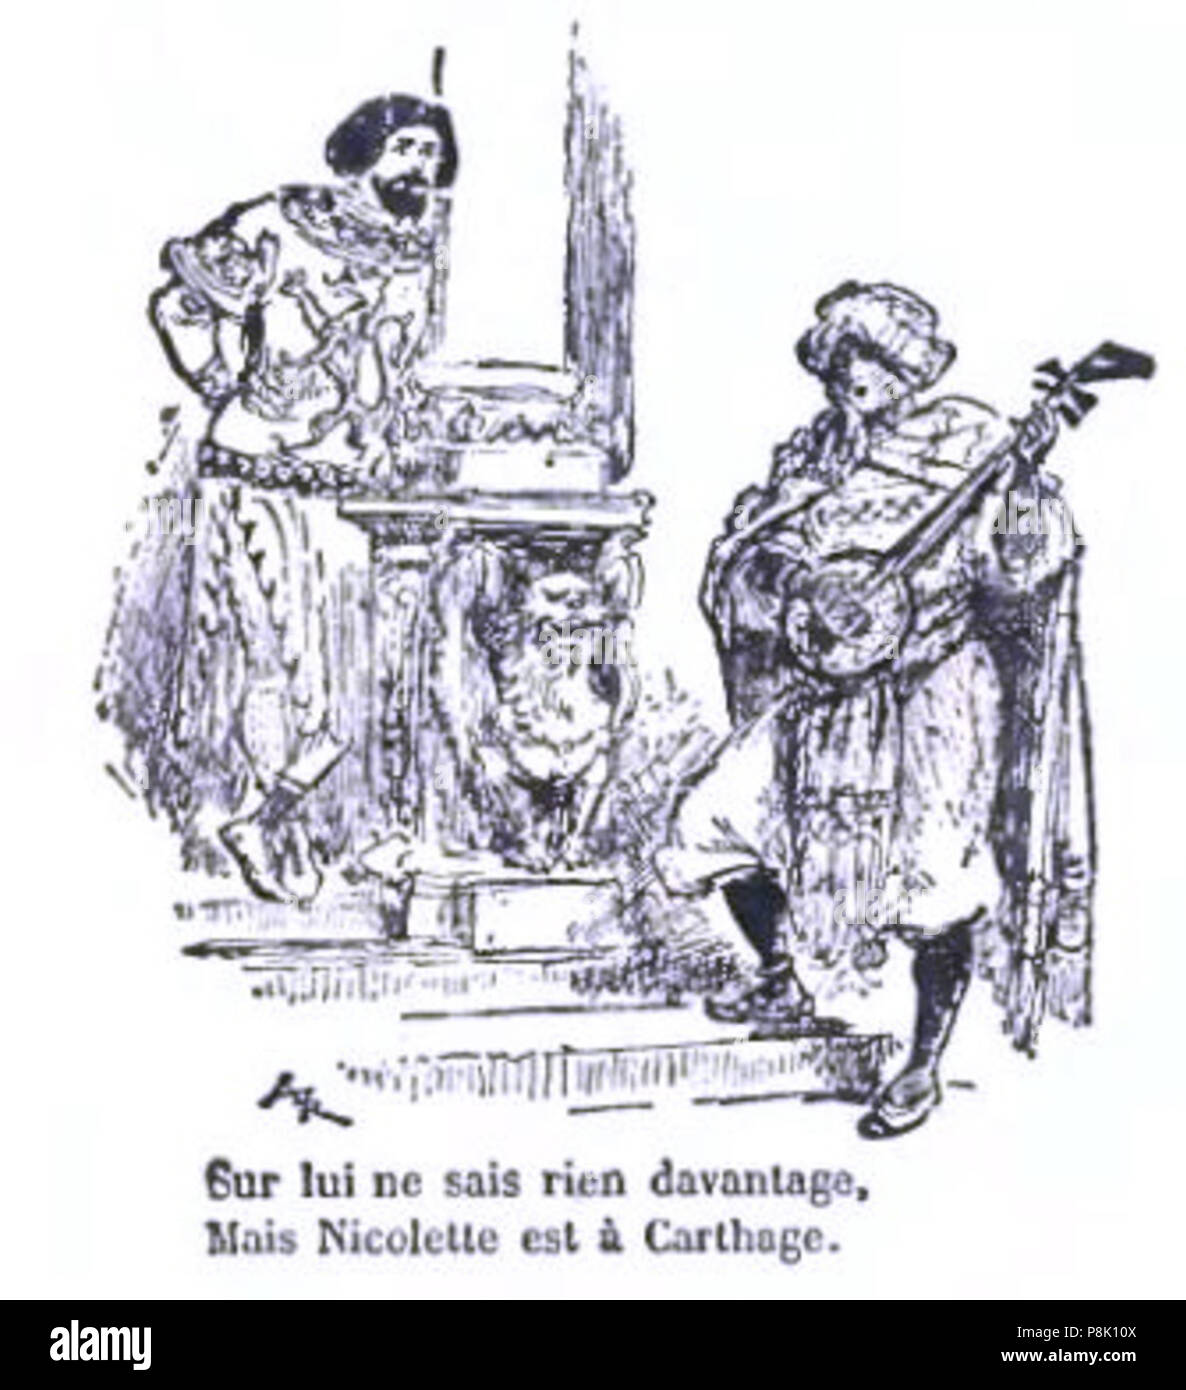 549 - Fabliaux Tarsot et Contes du Moyen Âge 1913-127 Foto de stock